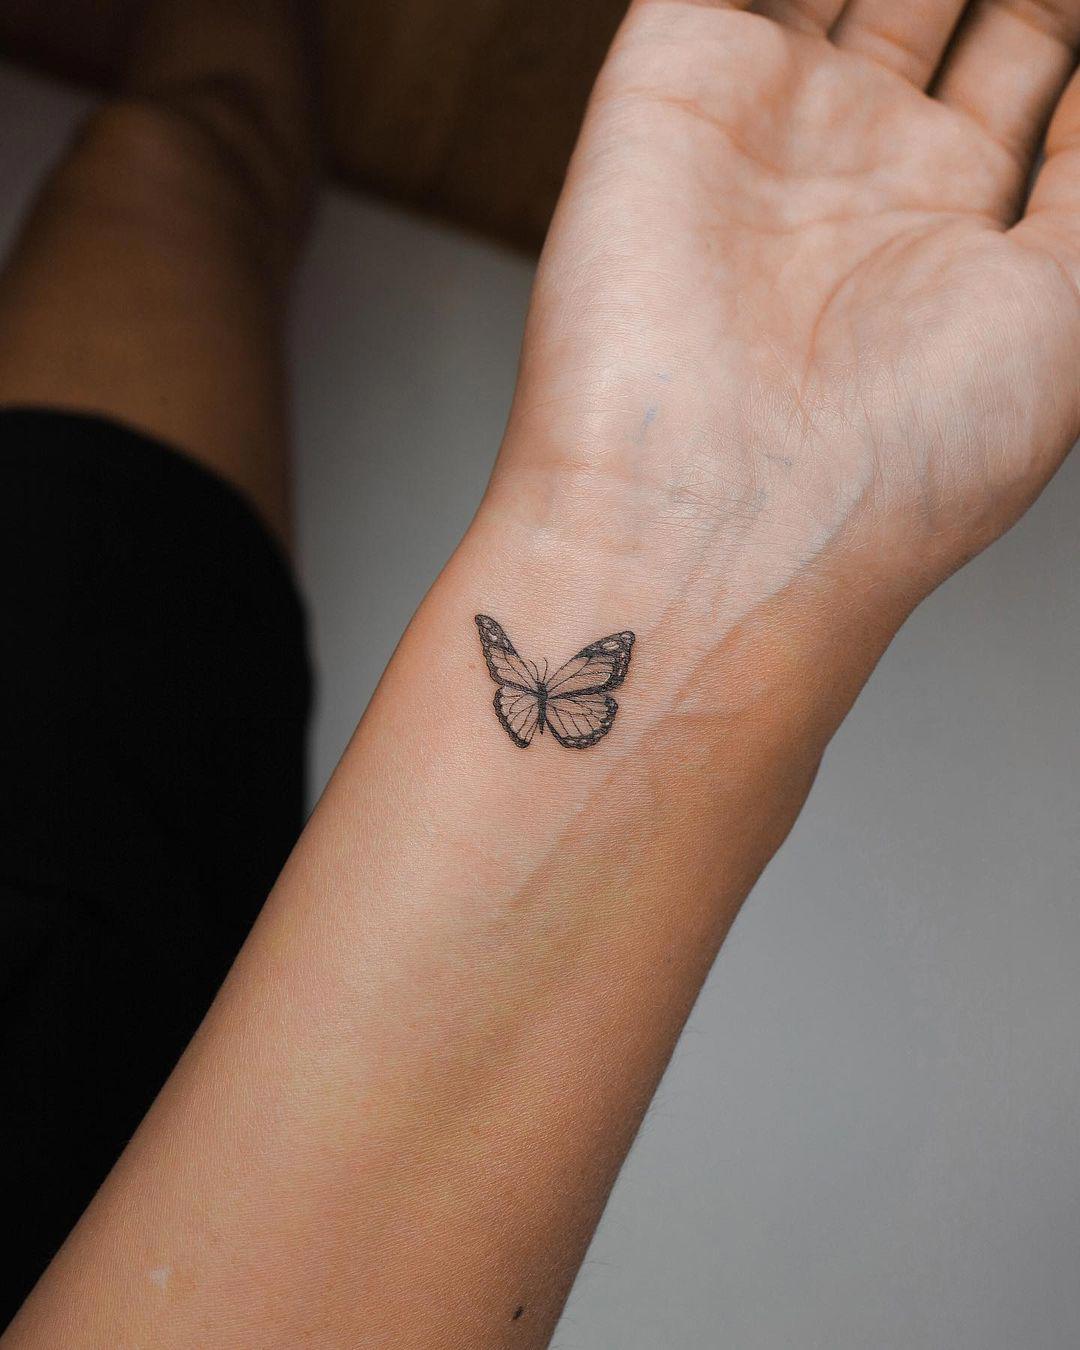 Una pequeña mariposa realista tatuada en la muñec